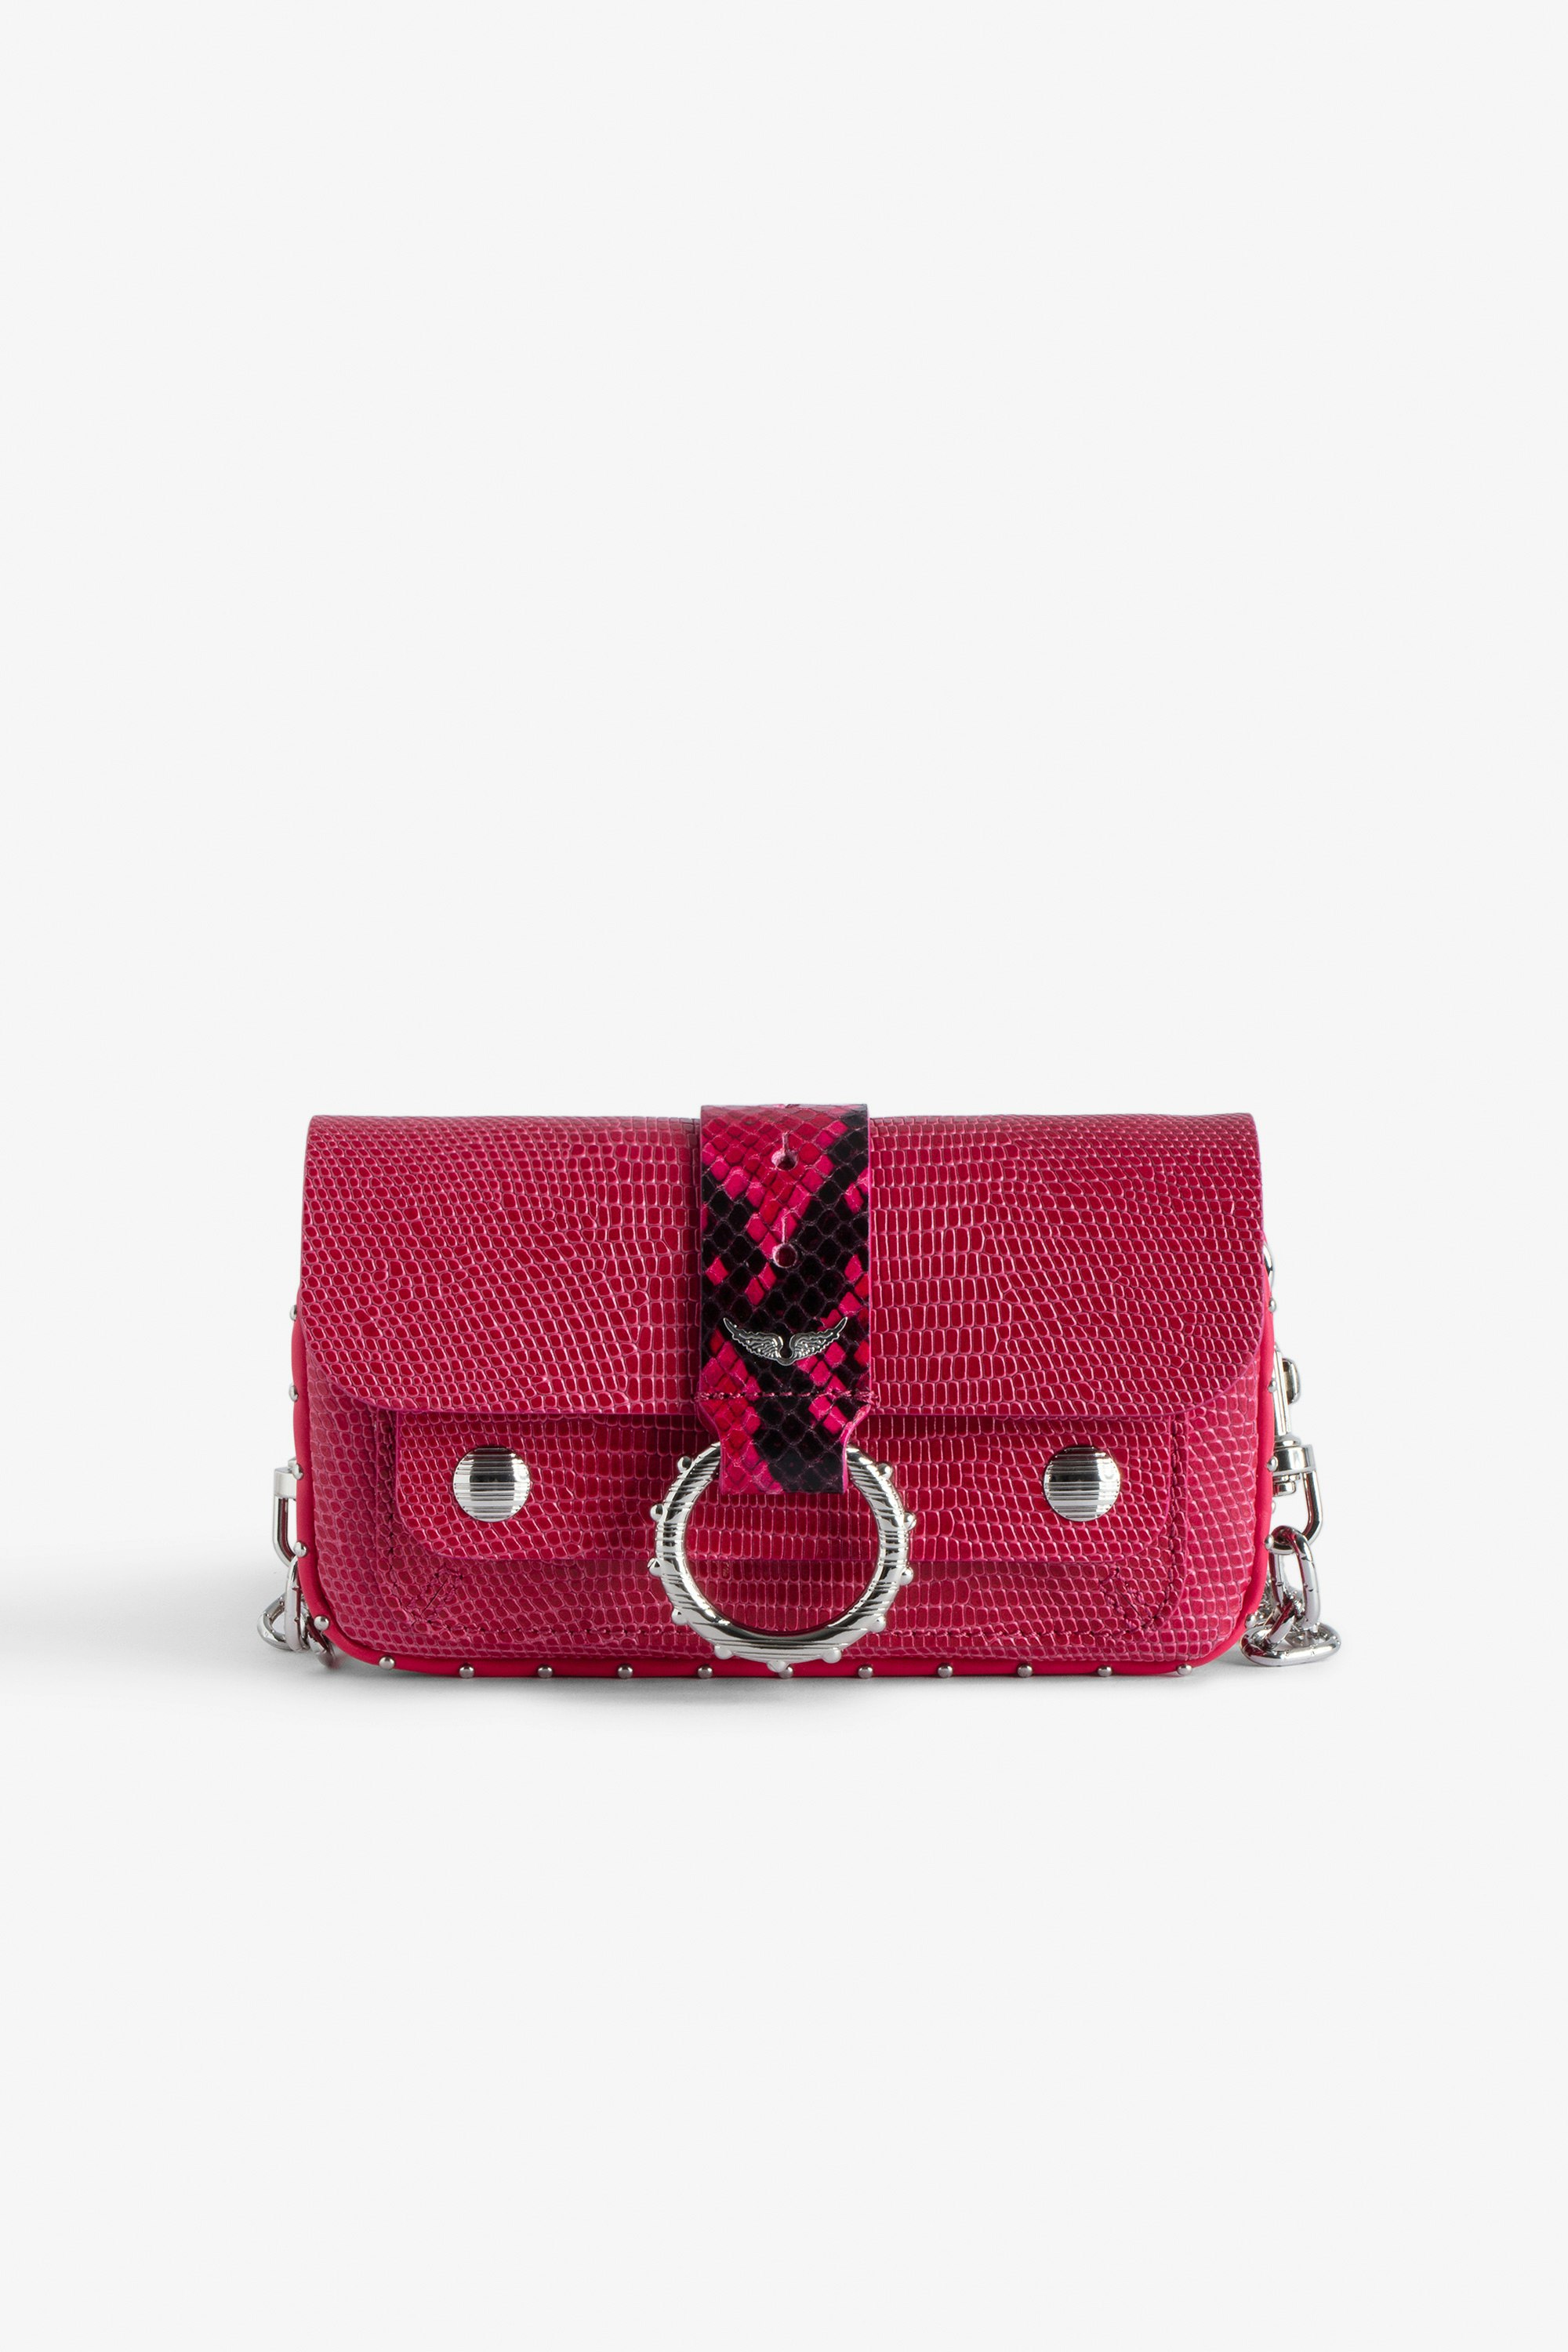 Tasche Kate Wallet Prägung - Mini-Tasche aus geprägtem Leder in Rosa mit Leguan-Effekt und Metallkette für Damen.